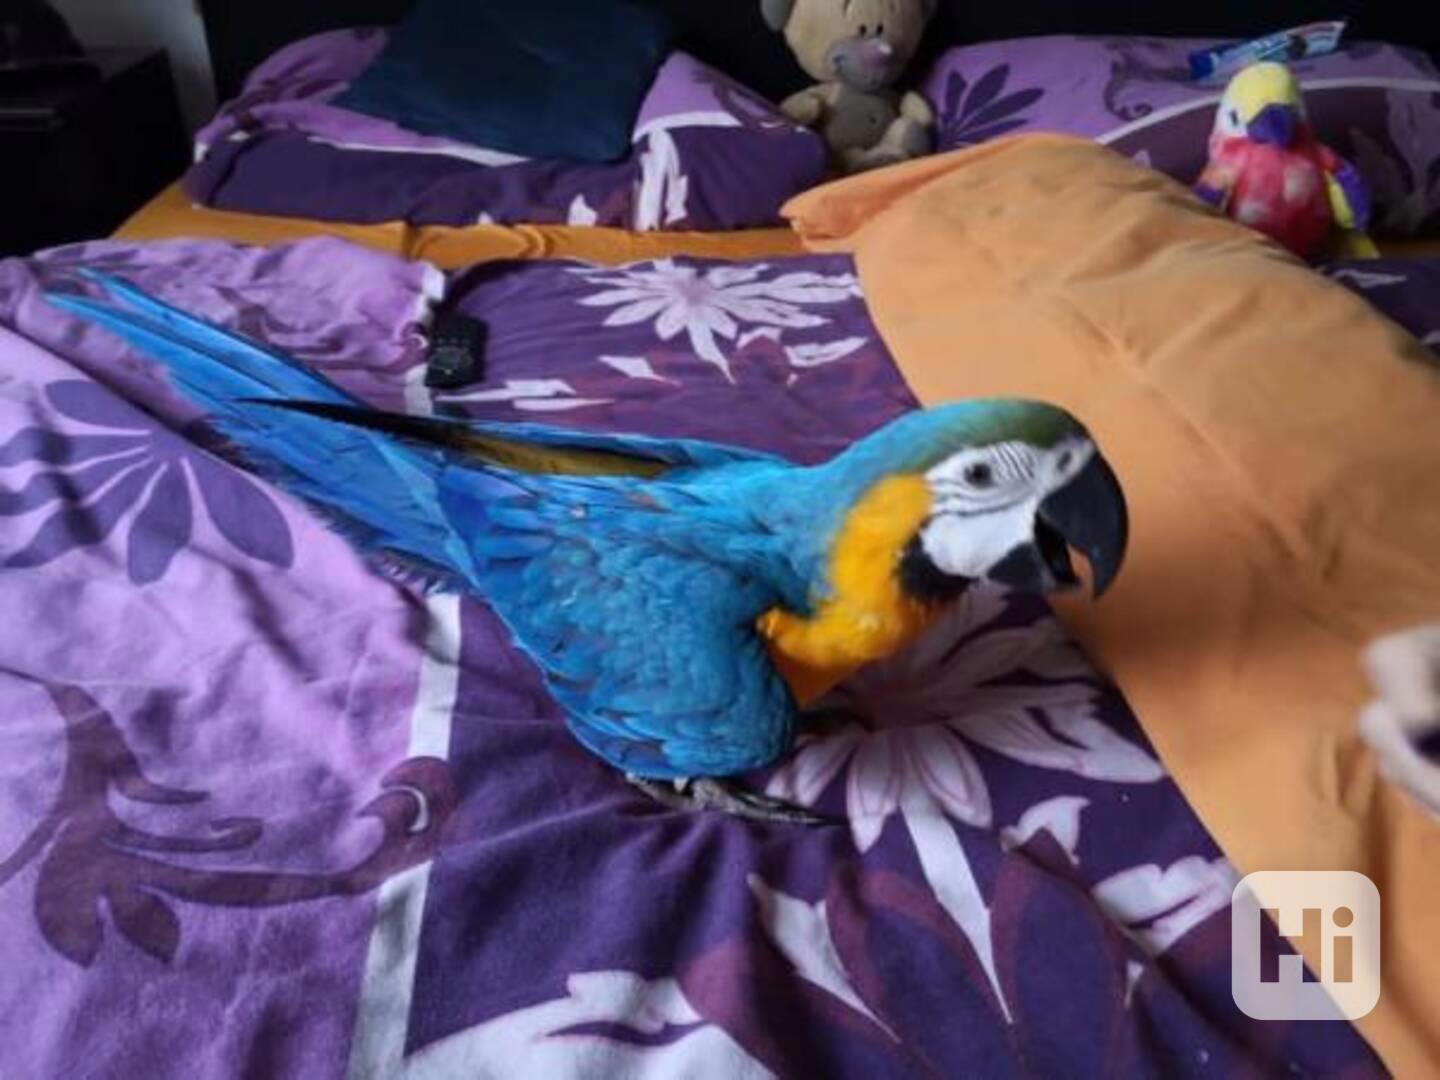 Ručně odchovaní modrozlatí papoušci již k dispozici - foto 1